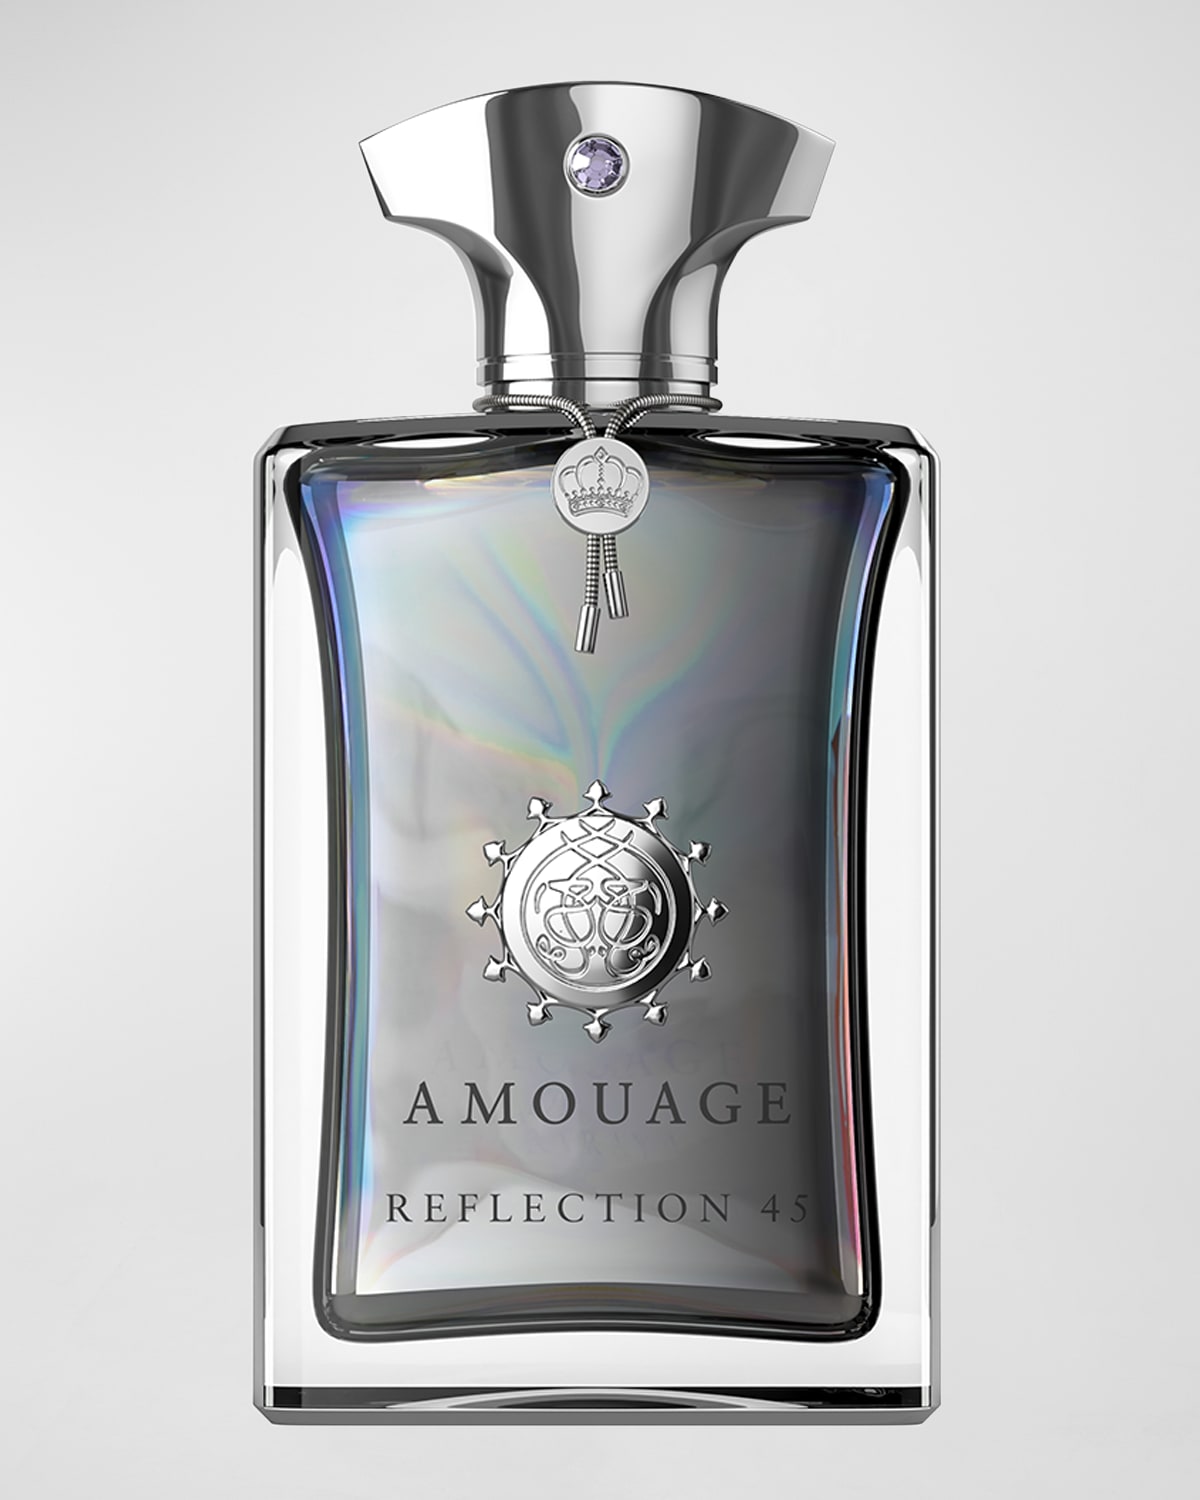 Amouage 3.4 oz. Reflection Man 45 Extrait de Parfum